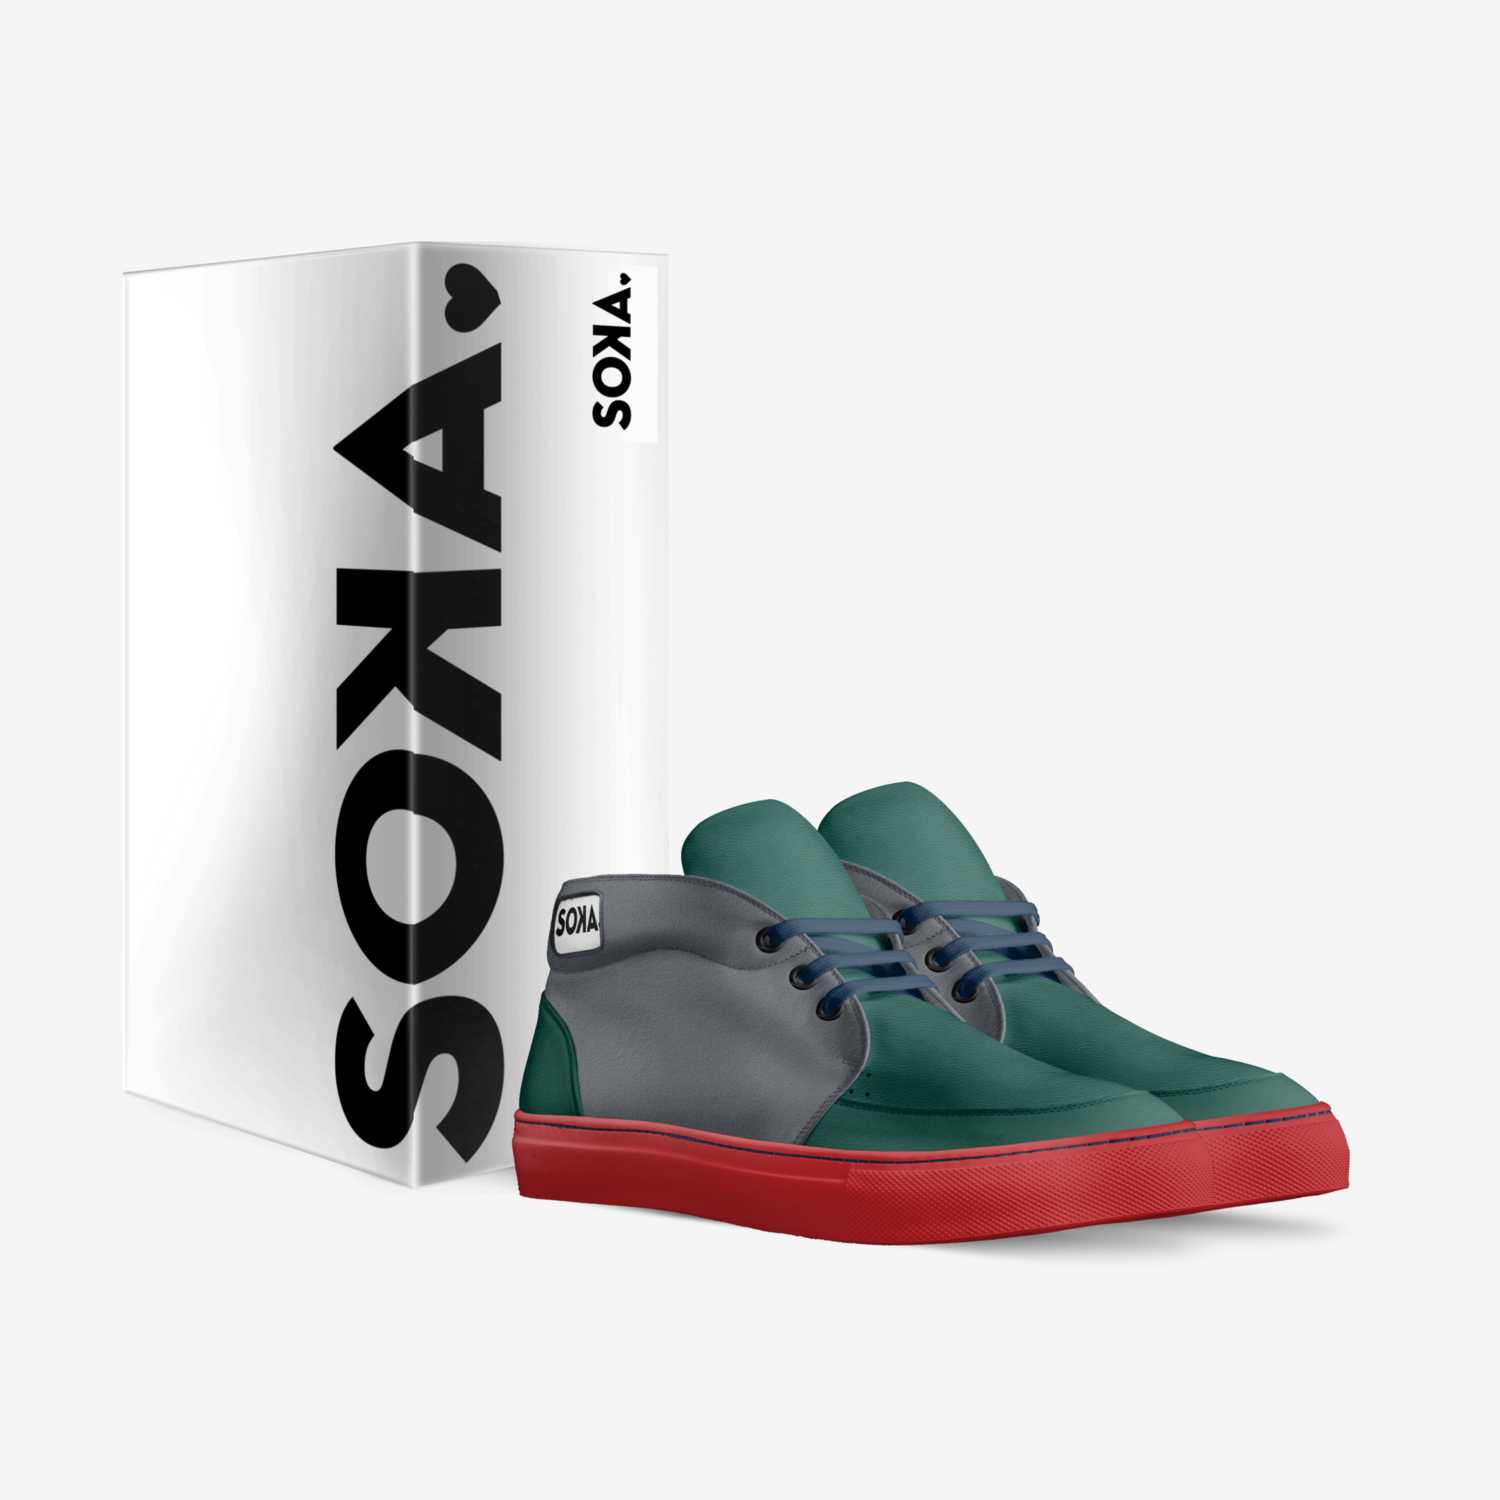 SOKA custom made in Italy shoes by Agus Sudono | Box view